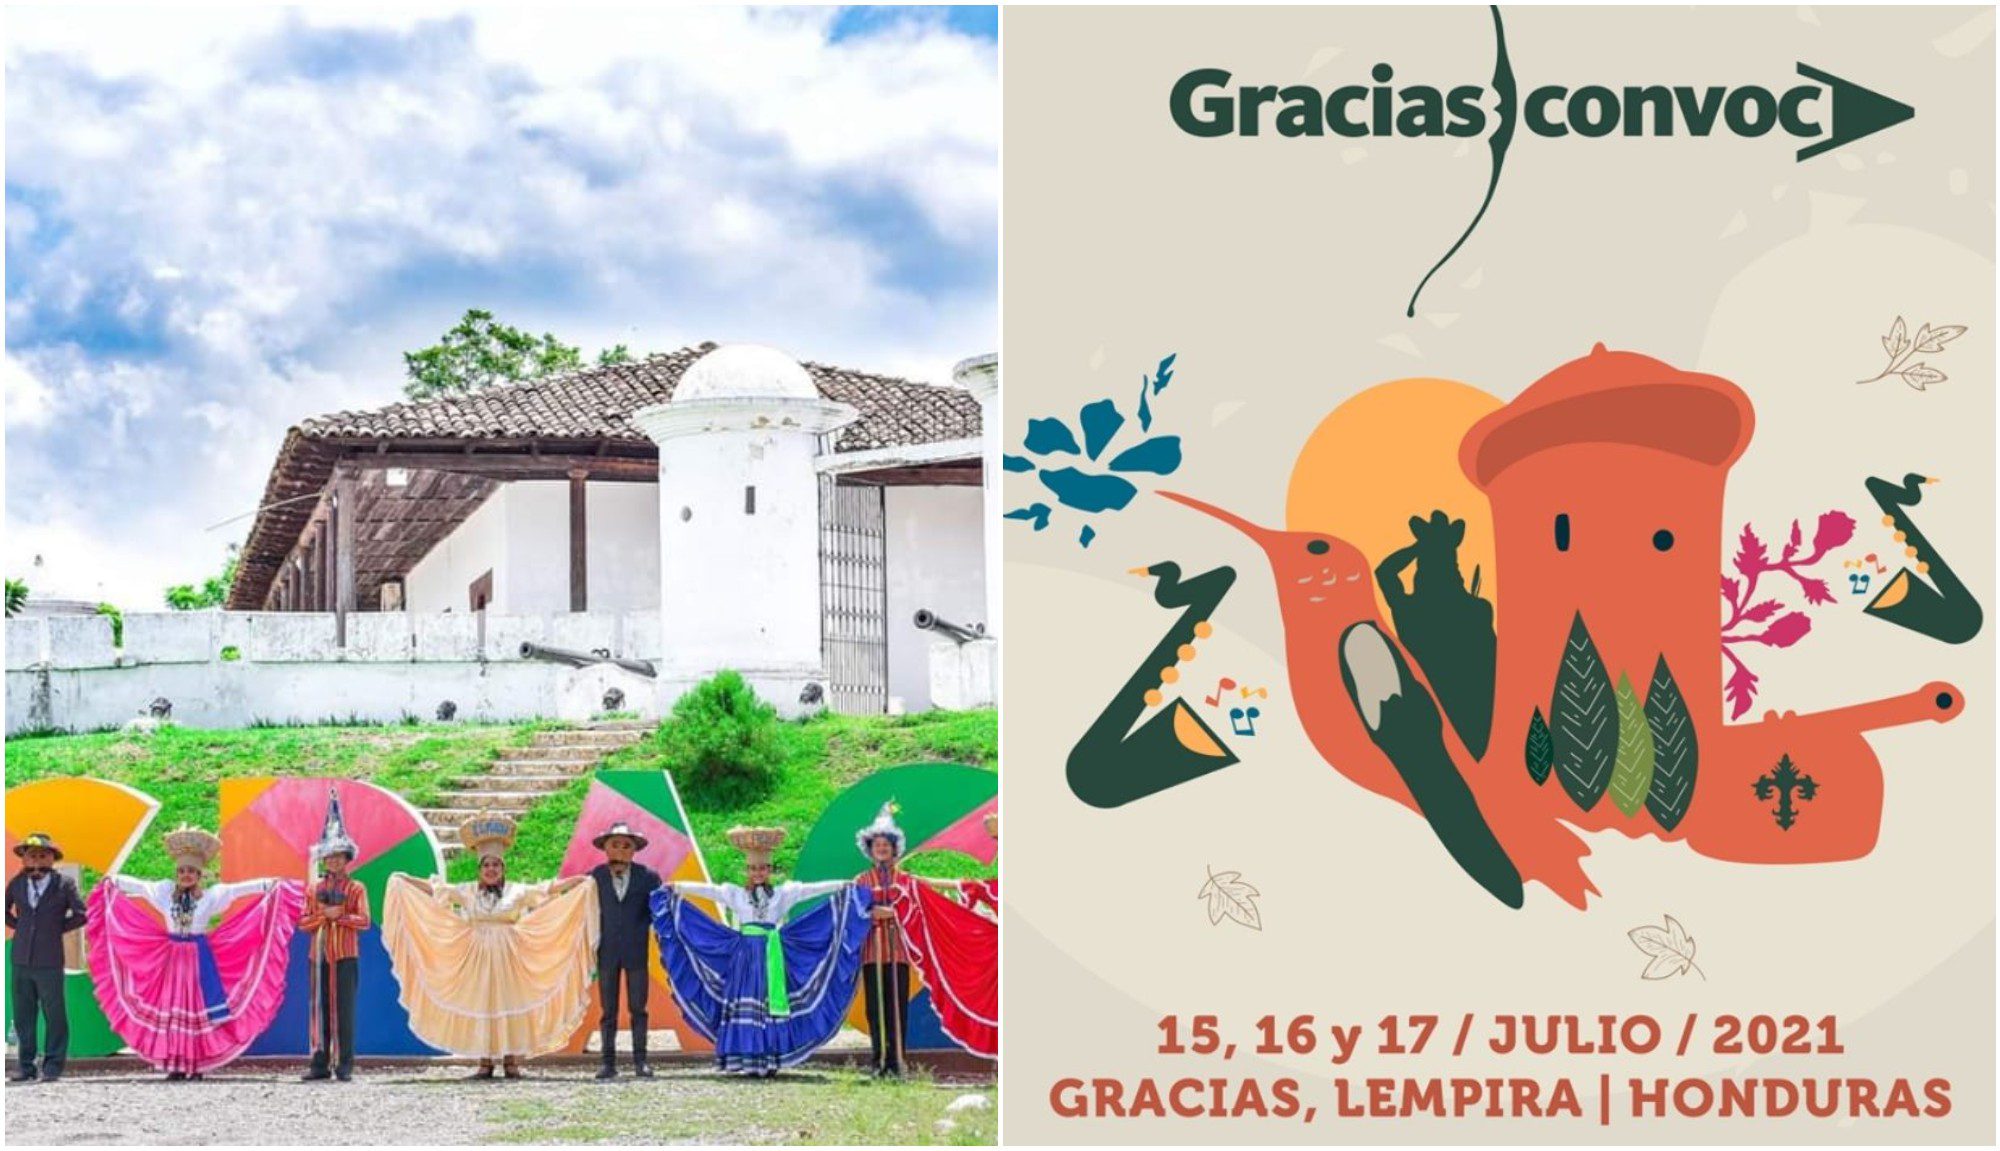 Festival de Gracias Convoca se llevará a cabo del 15 al 17 de julio